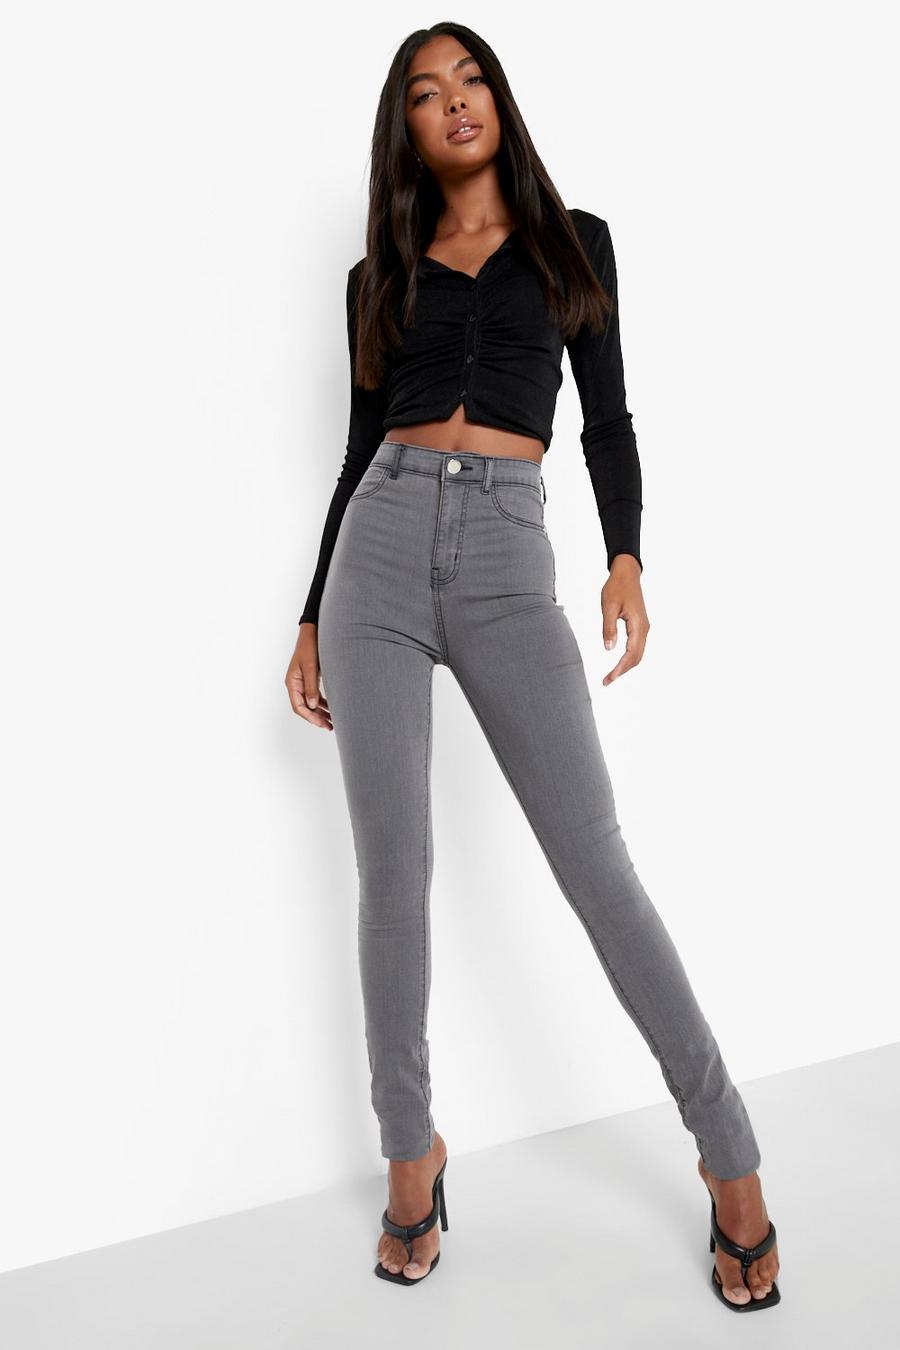 אפור grigio טייץ ג'ינס בייסיק לנשים גבוהות